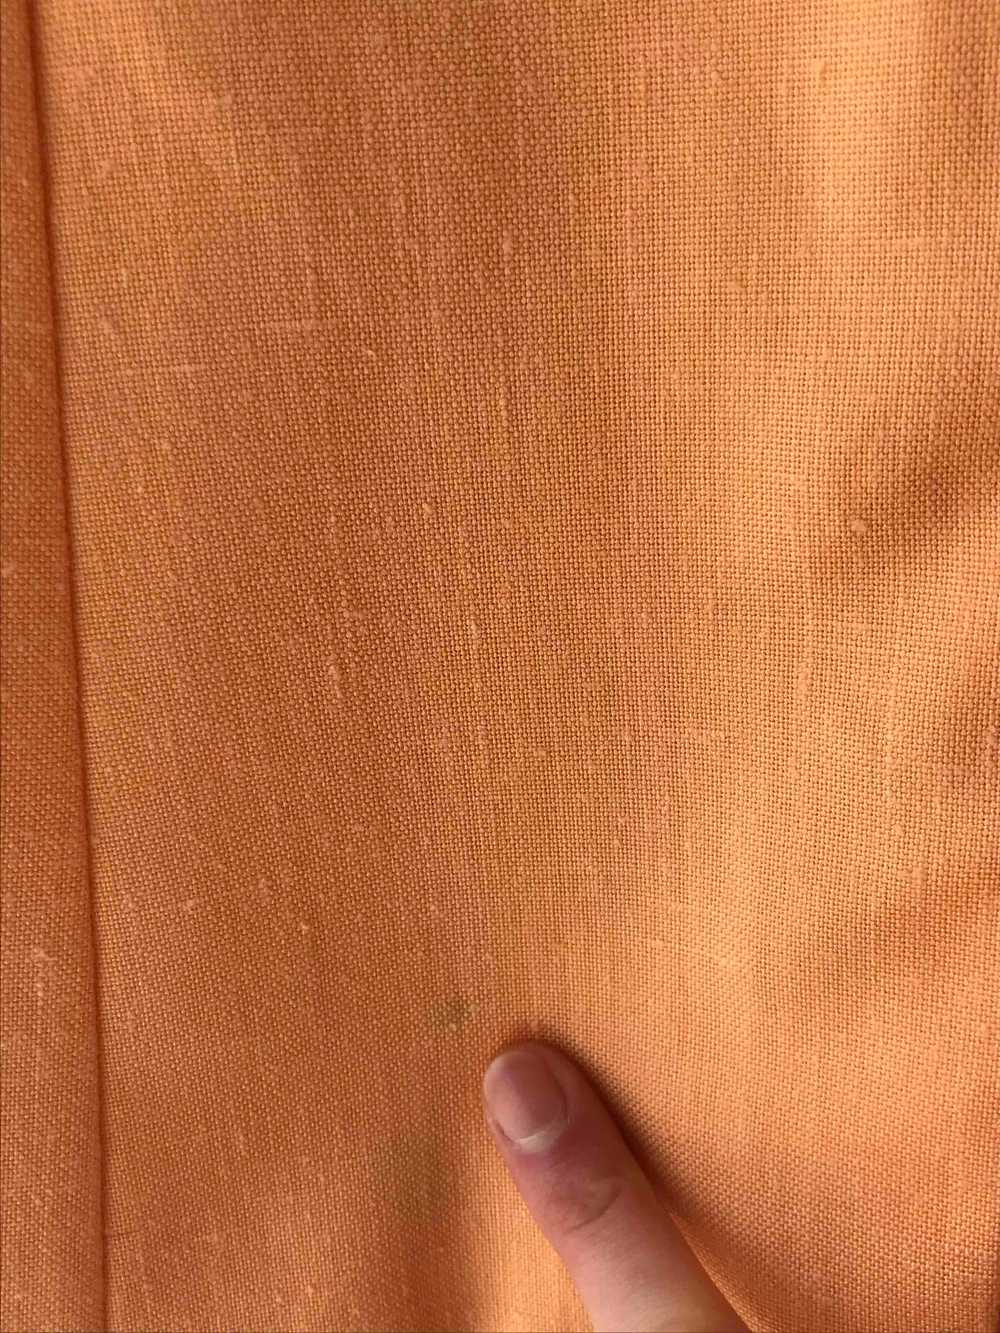 Veste longue en lin - Belle veste abricot en lin - image 4